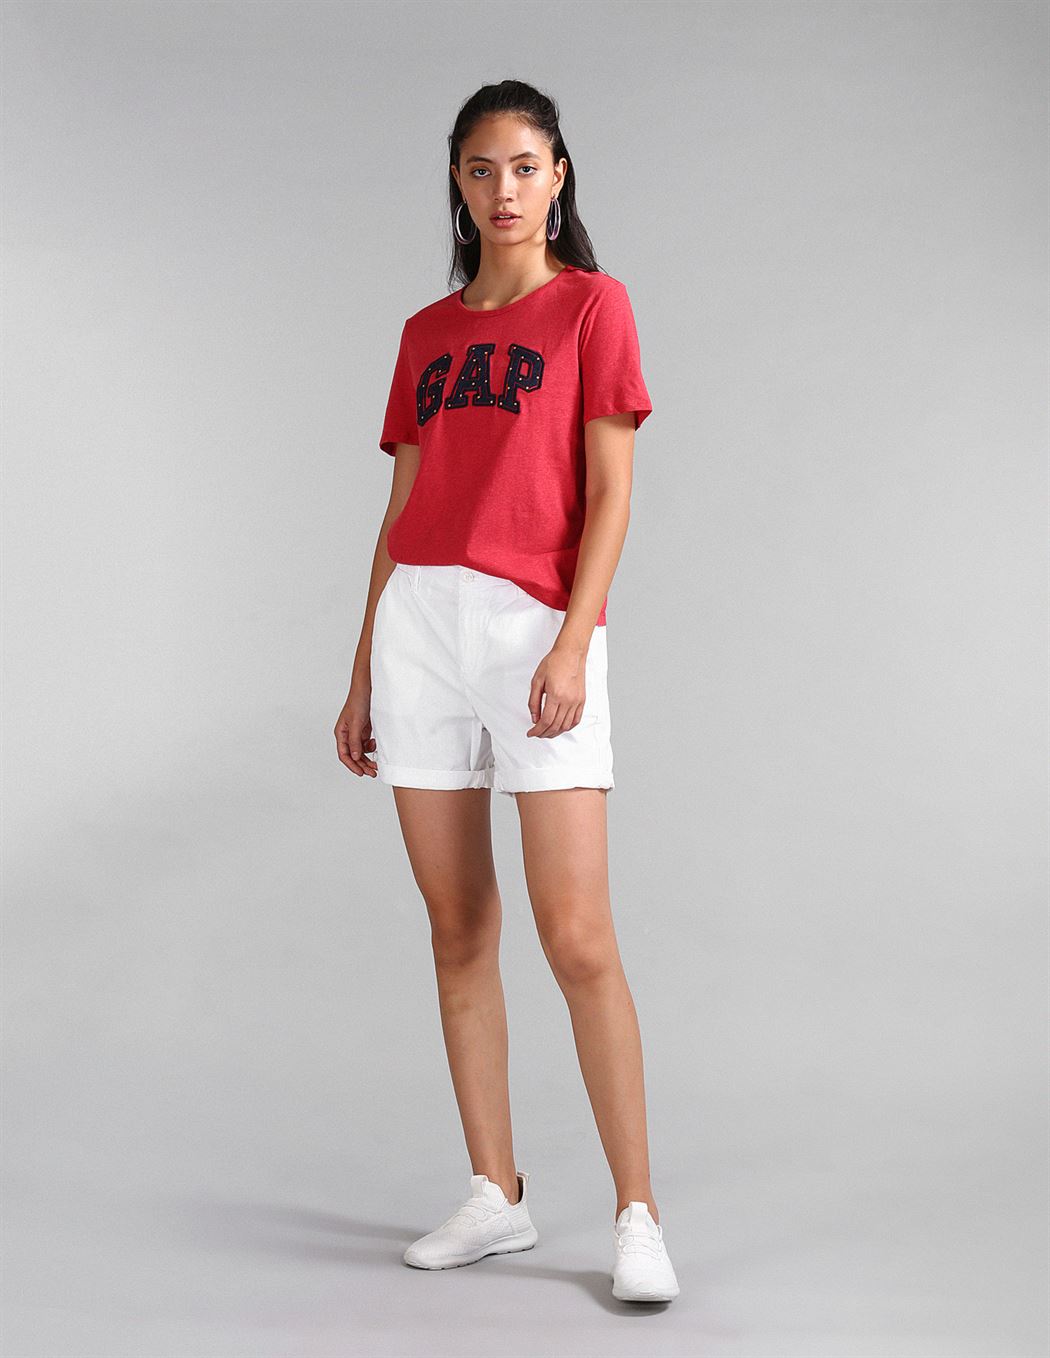 Gap Women's Casual Wear T-Shirt